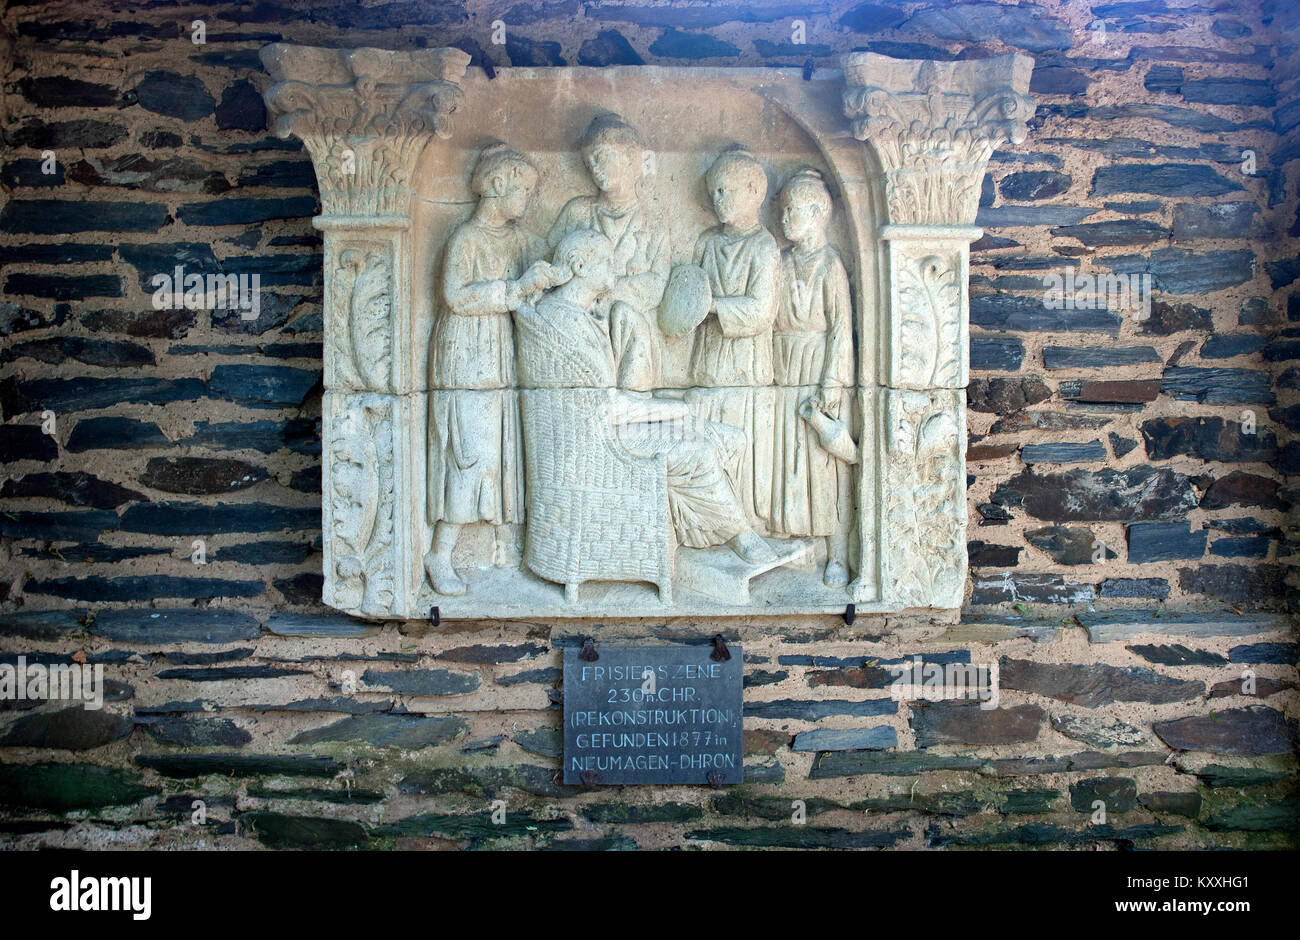 La sculpture sur pierre est un historique 'Morning scène romaine toilettes' jardin d'Ausone, Neumagen-Dhron, Moselle, Rhénanie-Palatinat, Allemagne, Europe Banque D'Images